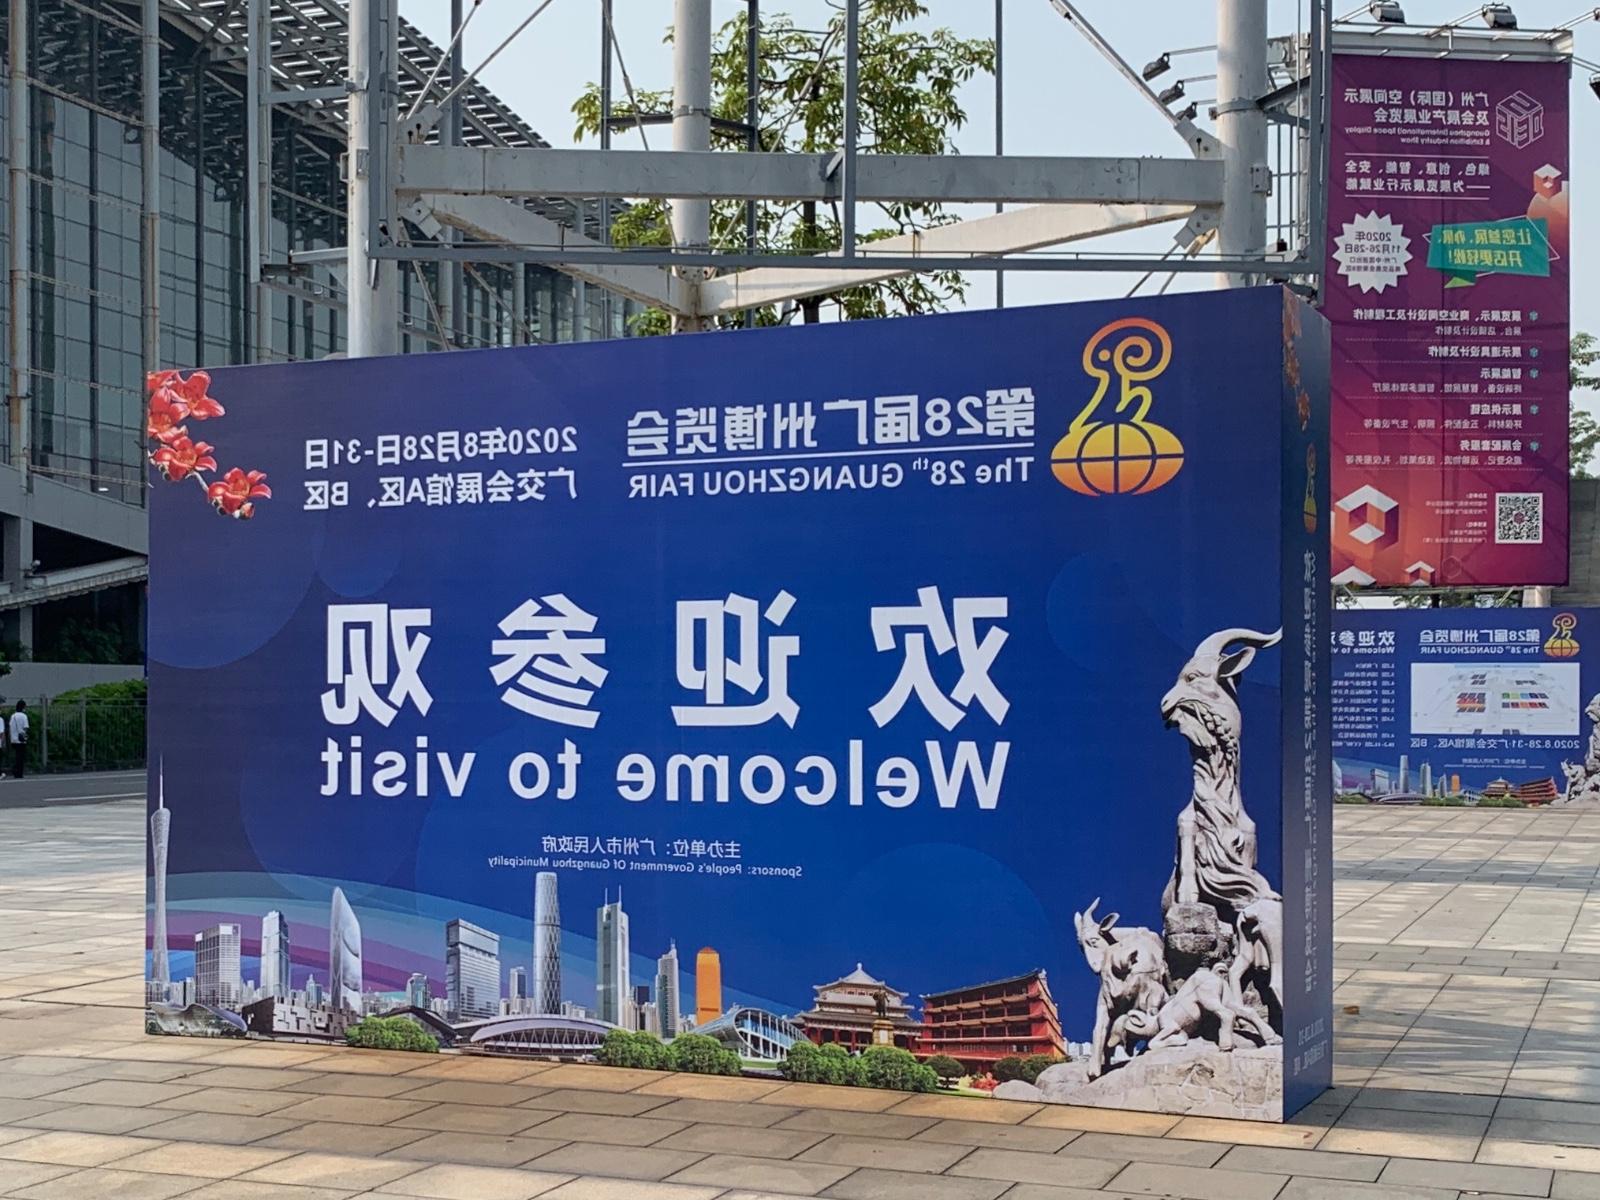 第28届广州博览会顺利举办 皇冠体育官网亮相科技创新展区